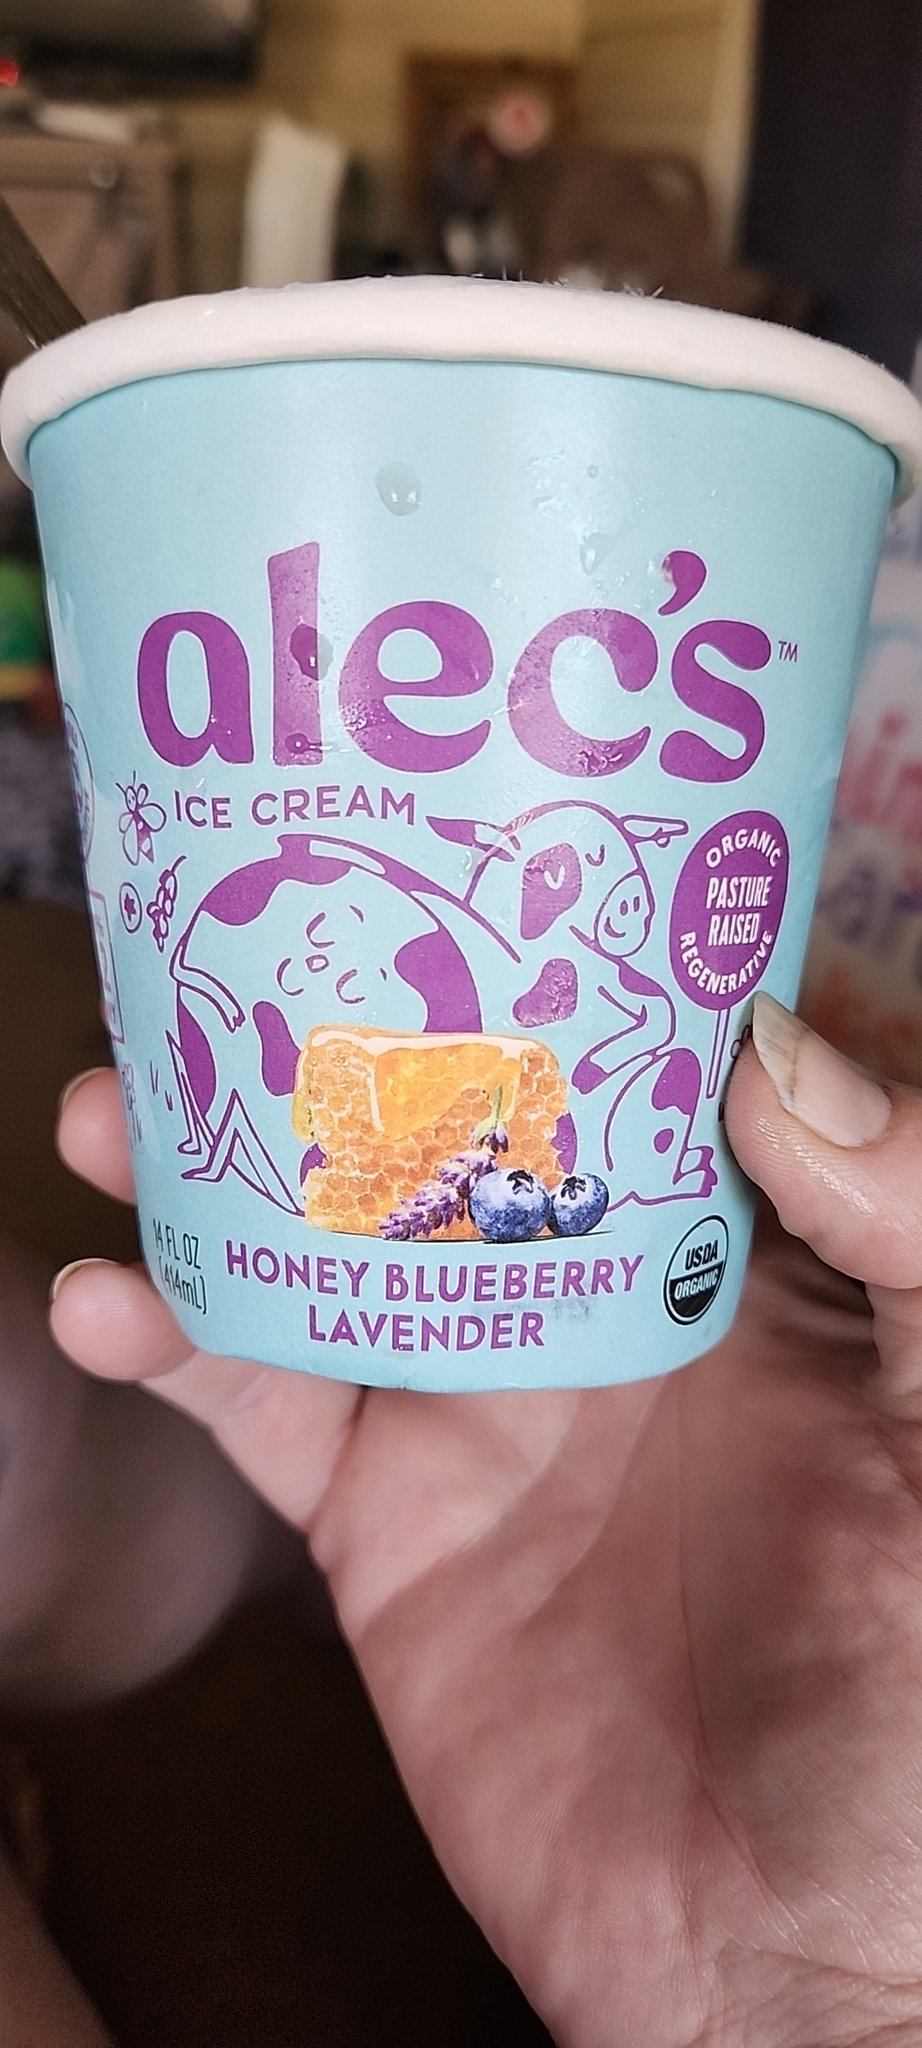 Super Sampler – Alec's Ice Cream